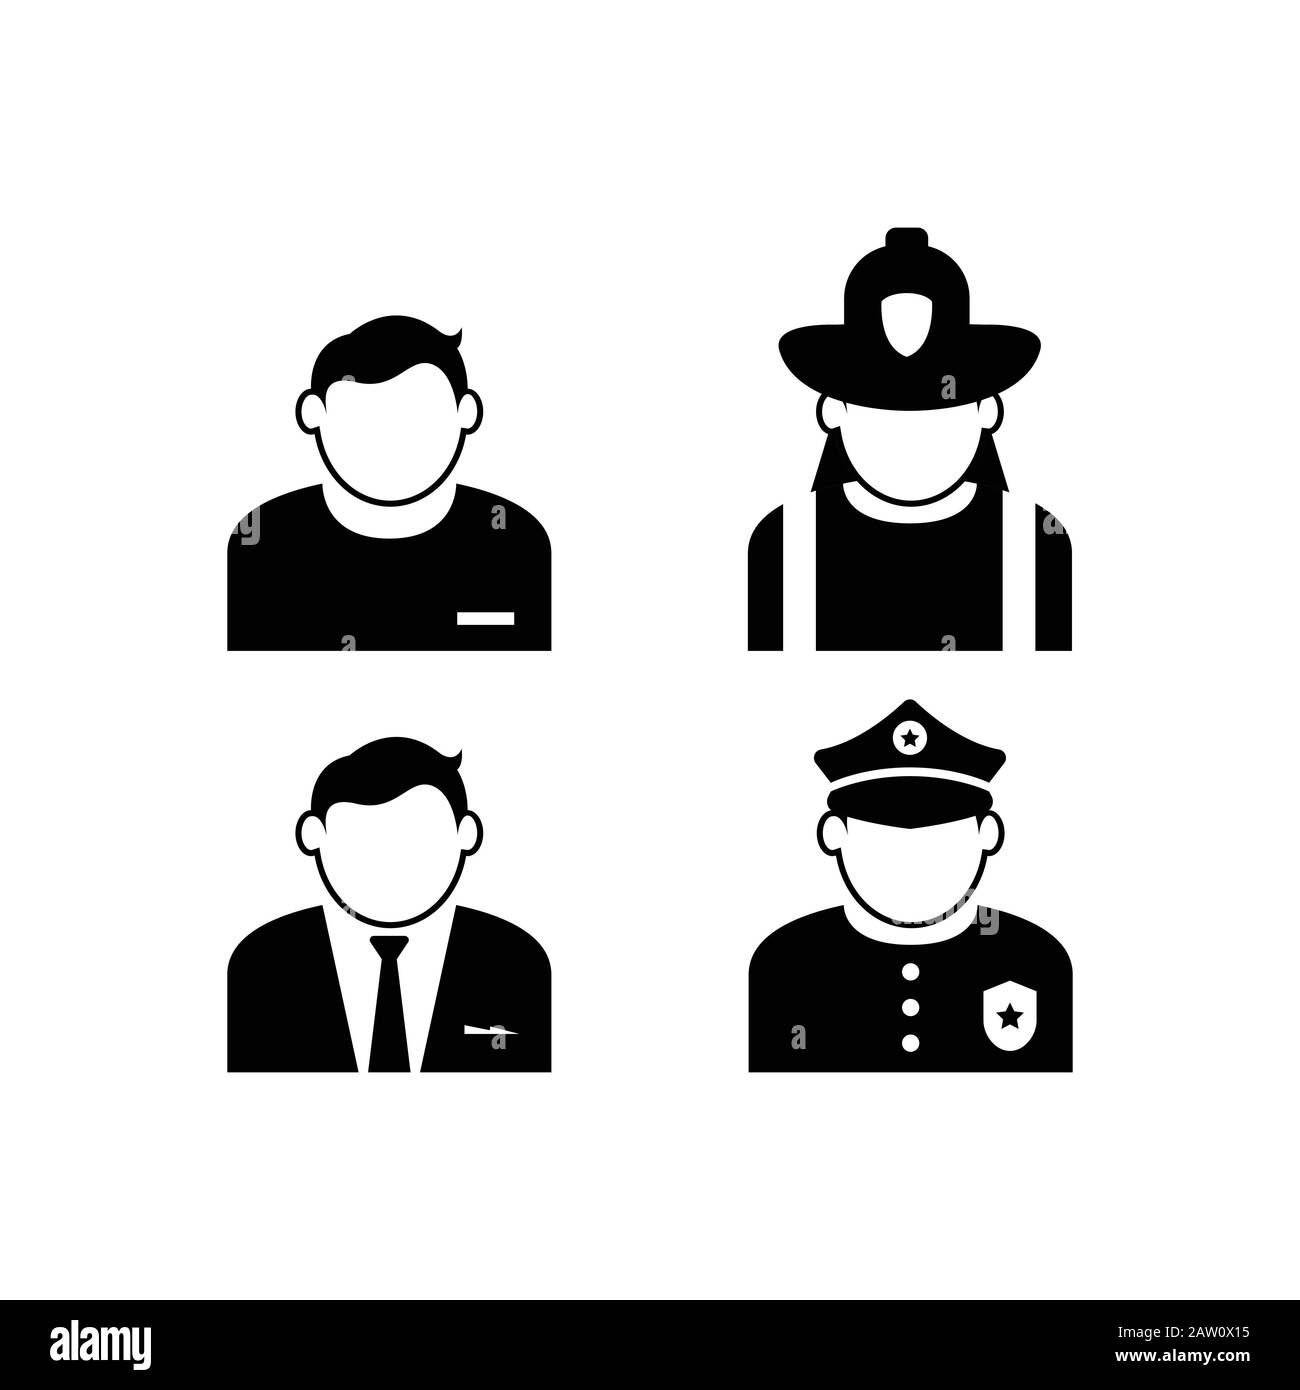 Iconos vectoriales de personas con una variedad de trabajos. Icono de gente de avatar con varios trabajos en color negro Ilustración del Vector